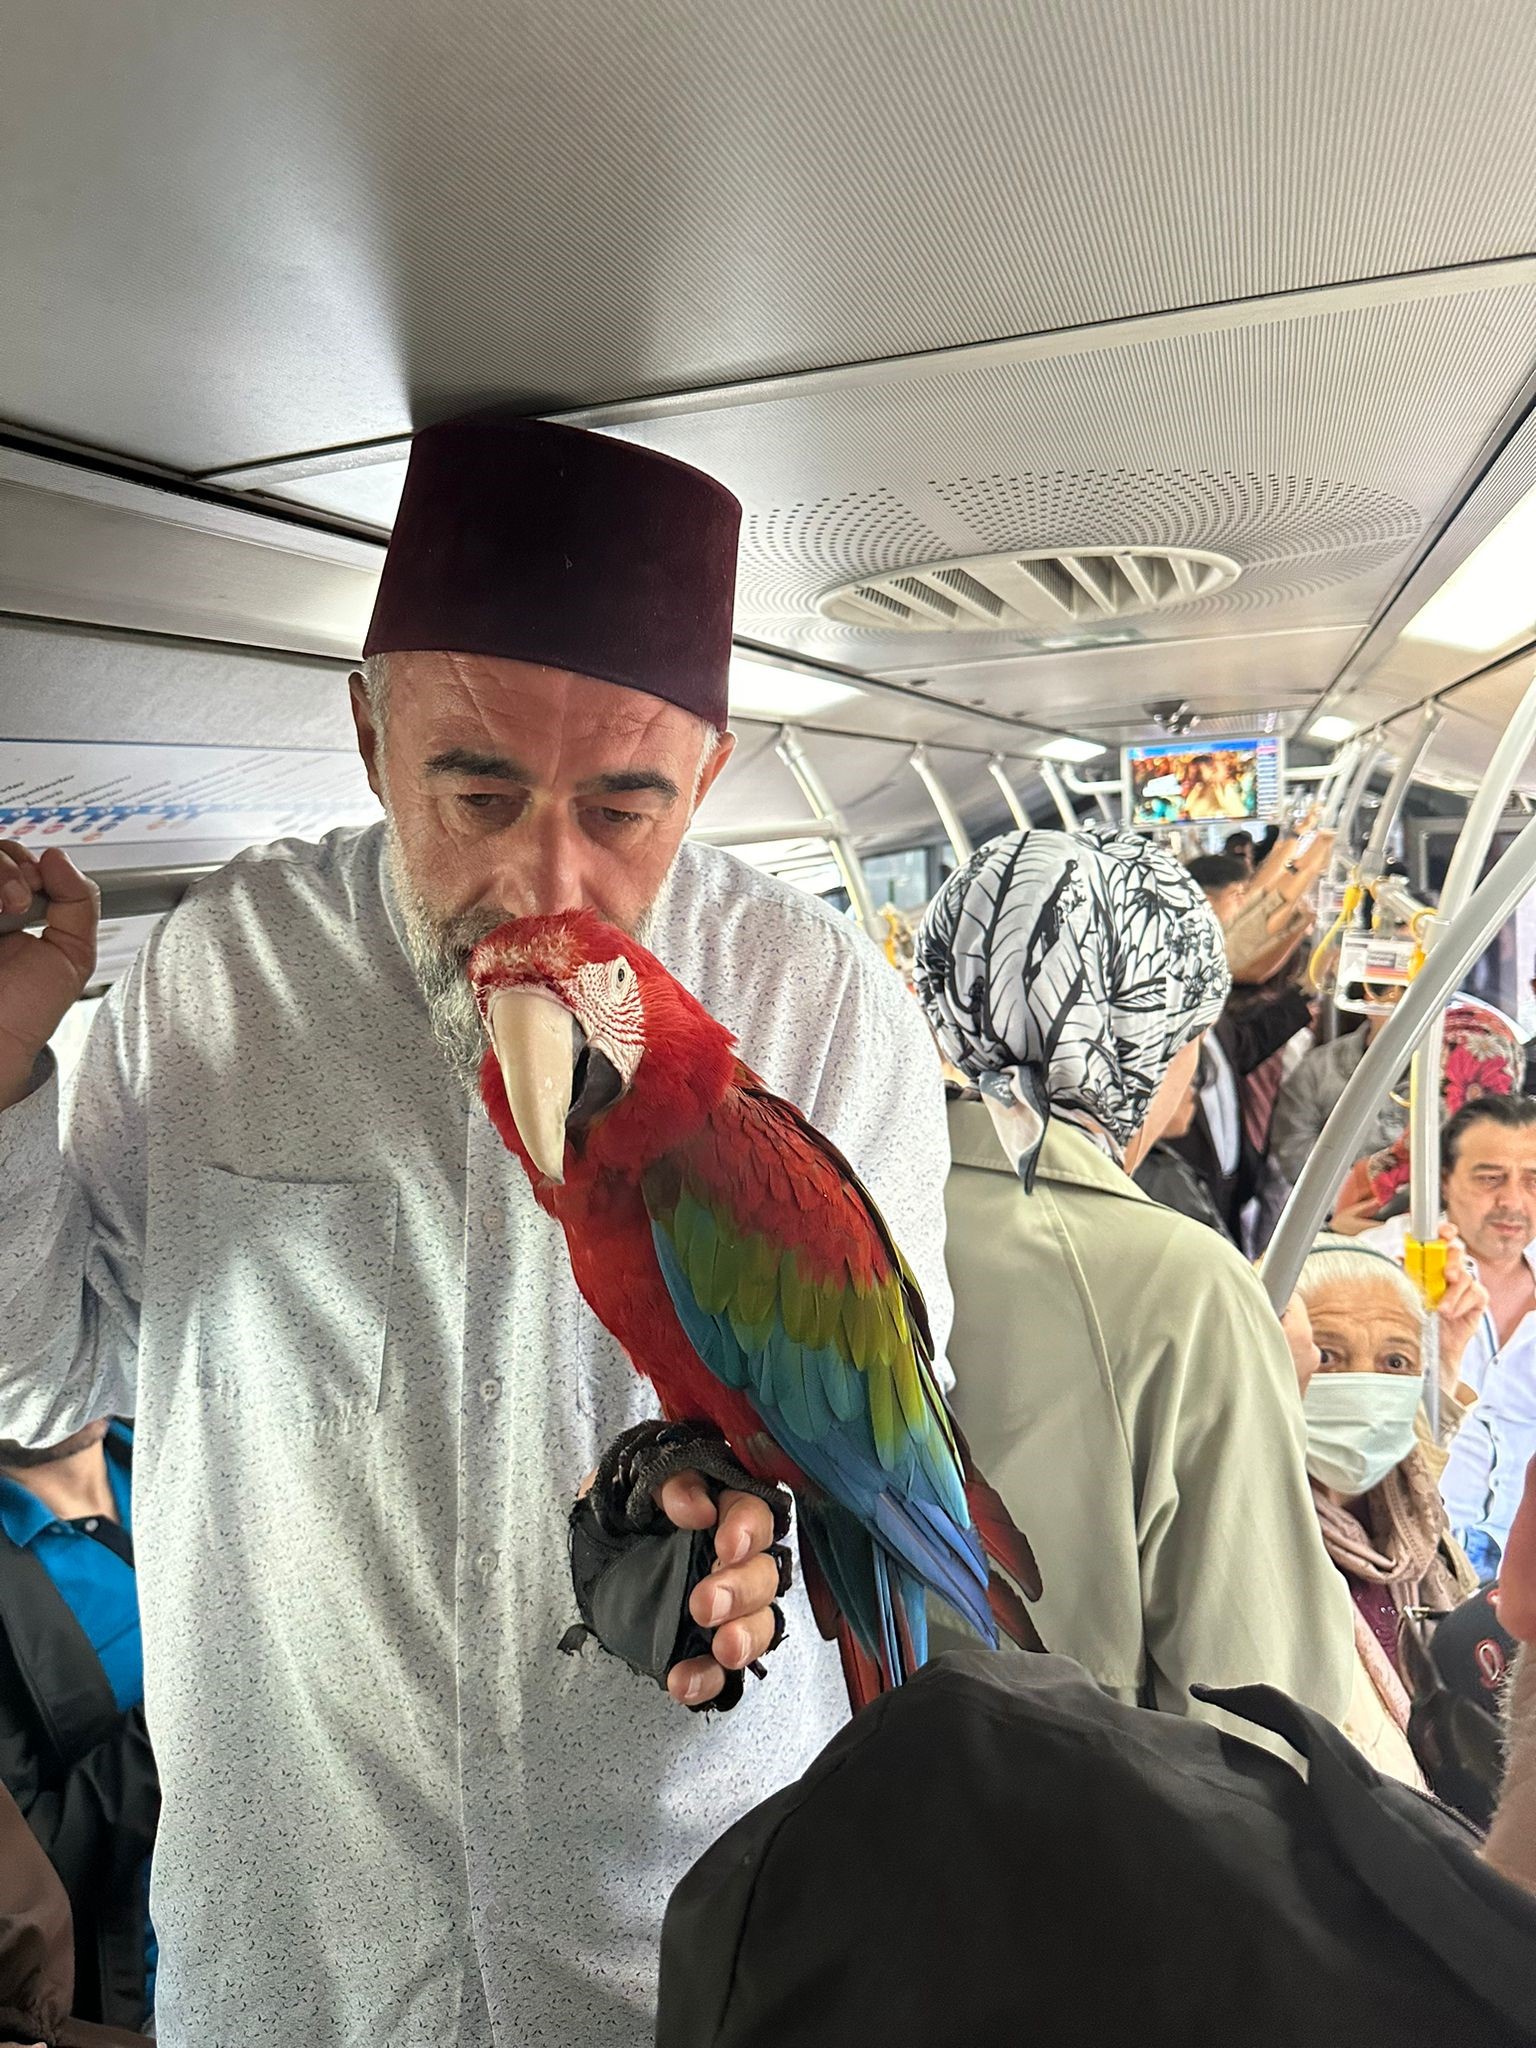 Sahibiyle metrobüse binen papağan 'Allah' diyor (VİDEOLU)